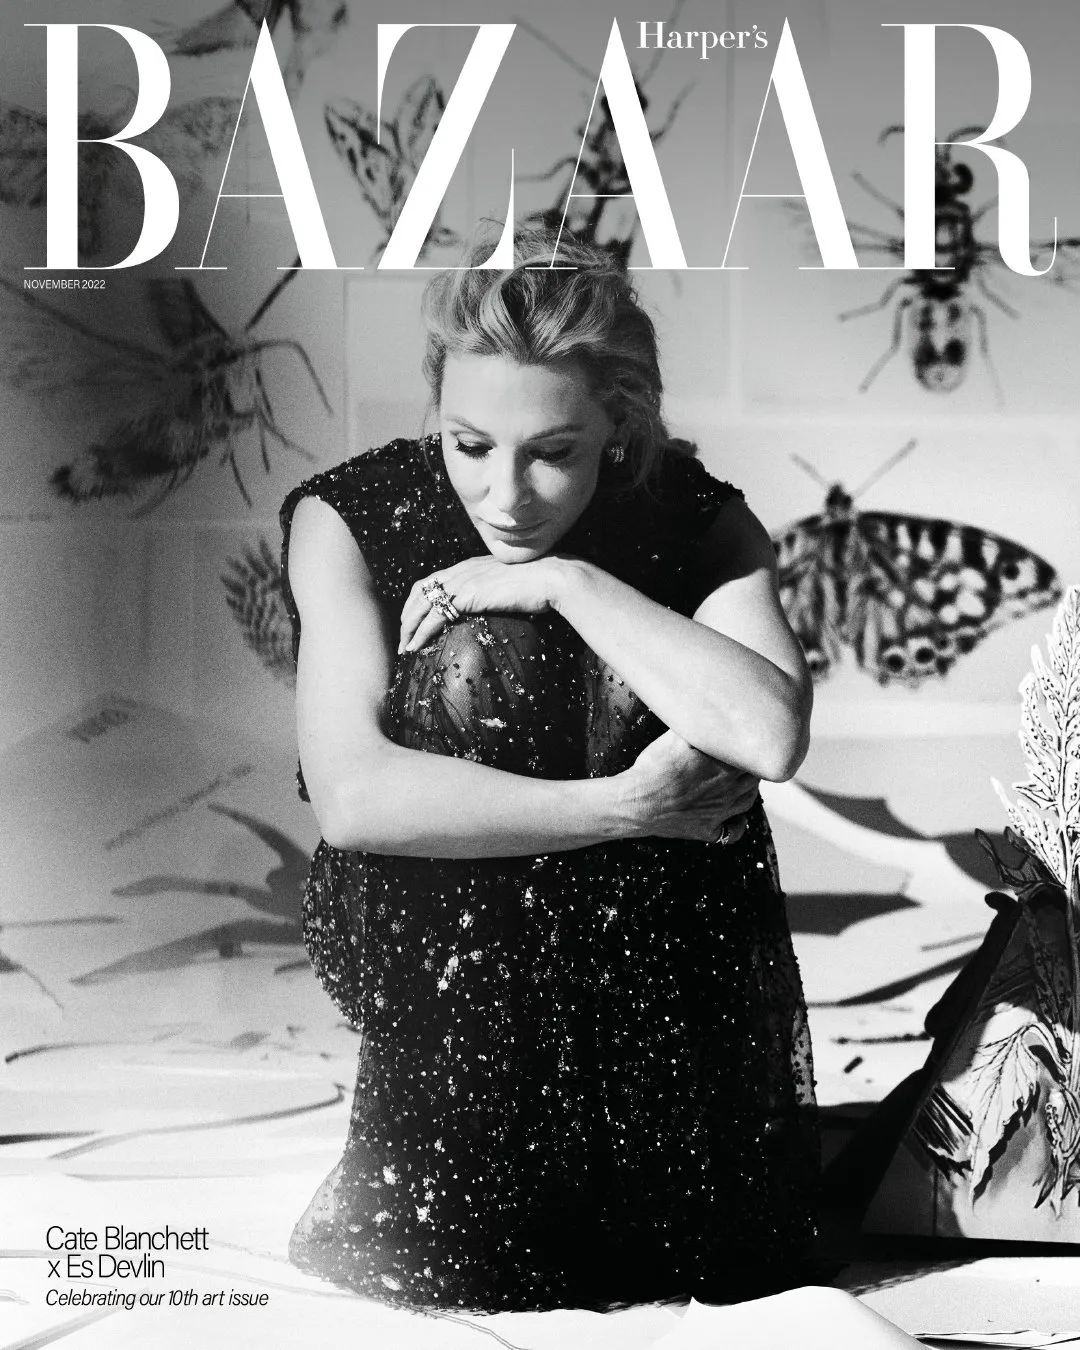 Cate Blanchett, UK version of 'Harper' s Bazaar' November issue photo | FMV6